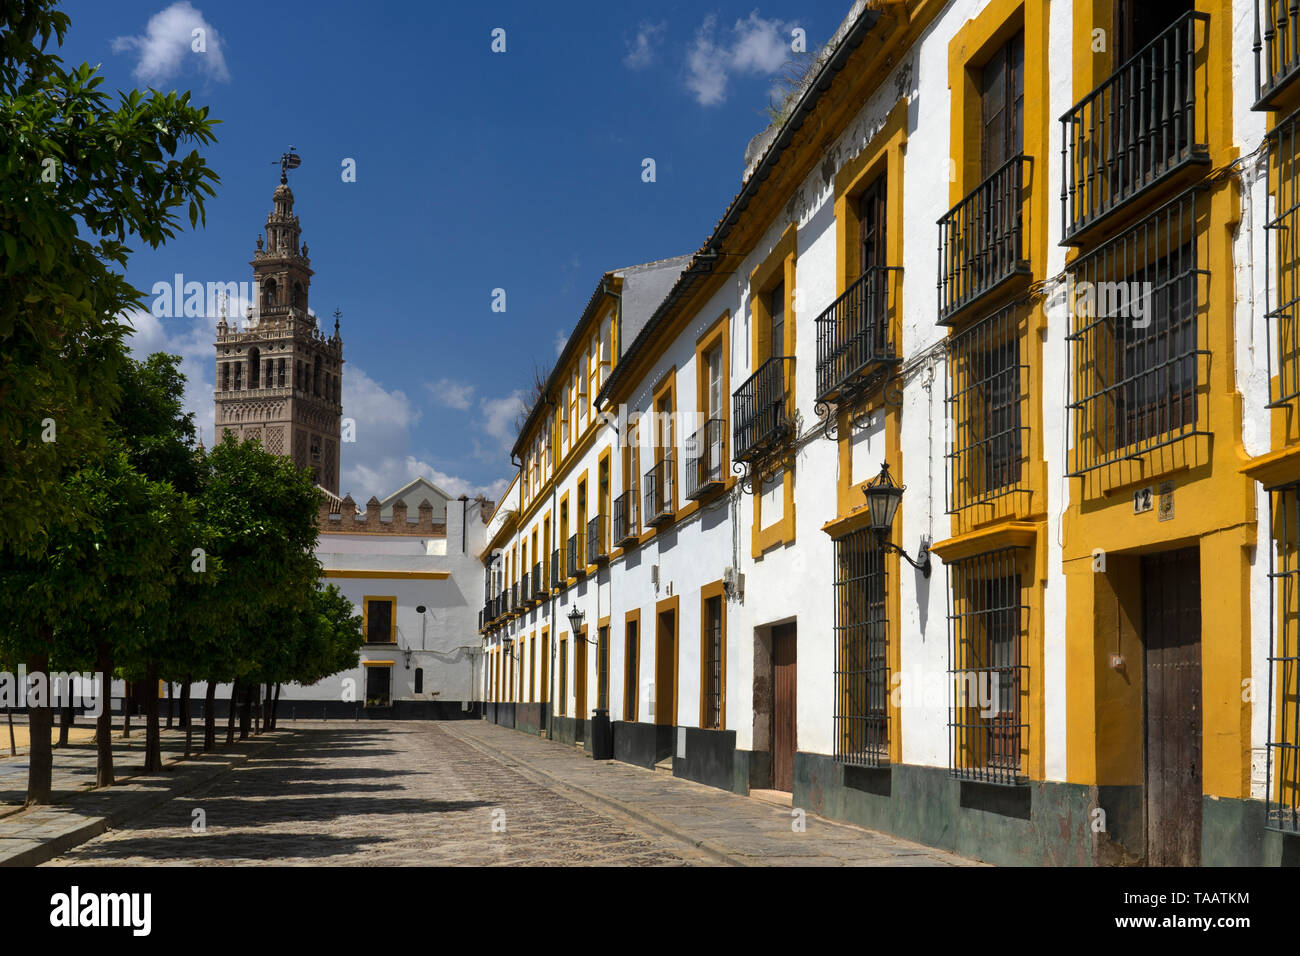 Quadrat an alcazar mit alten Gebäuden mit Kathedrale in Abstand, Sevilla, Andalusien, Spanien Stockfoto